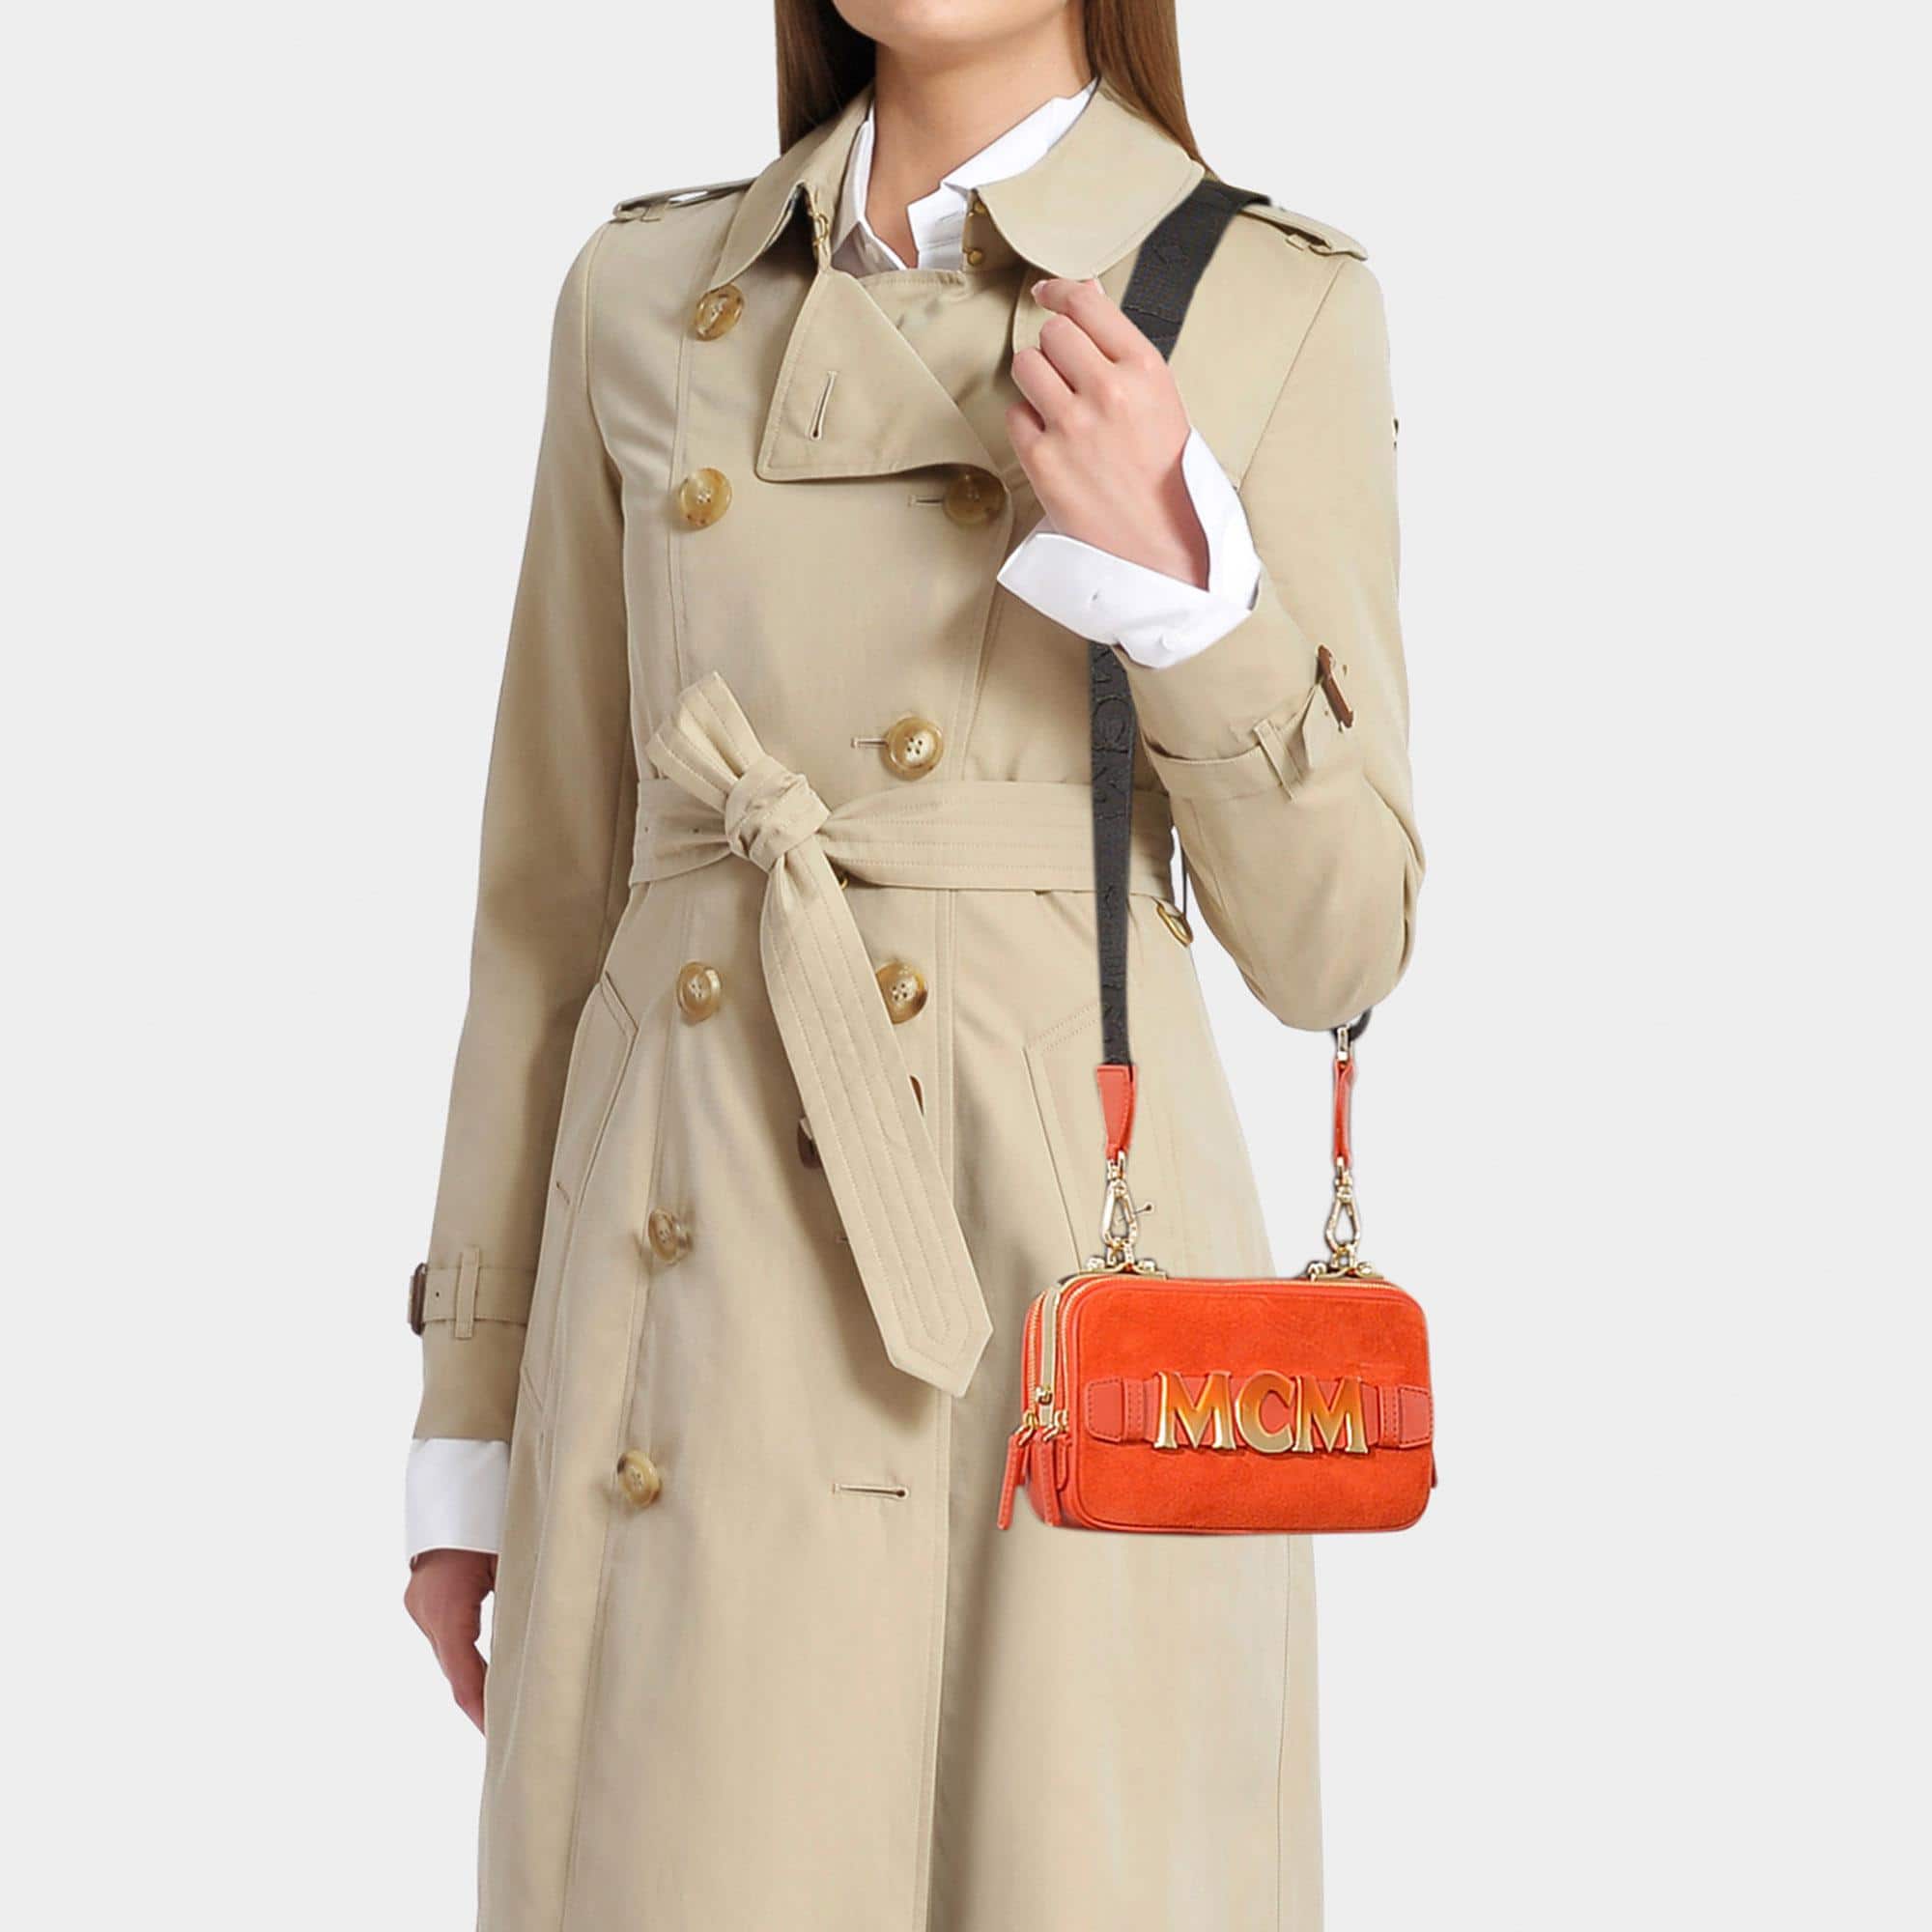 Бежевое пальто и оранжевая сумочка